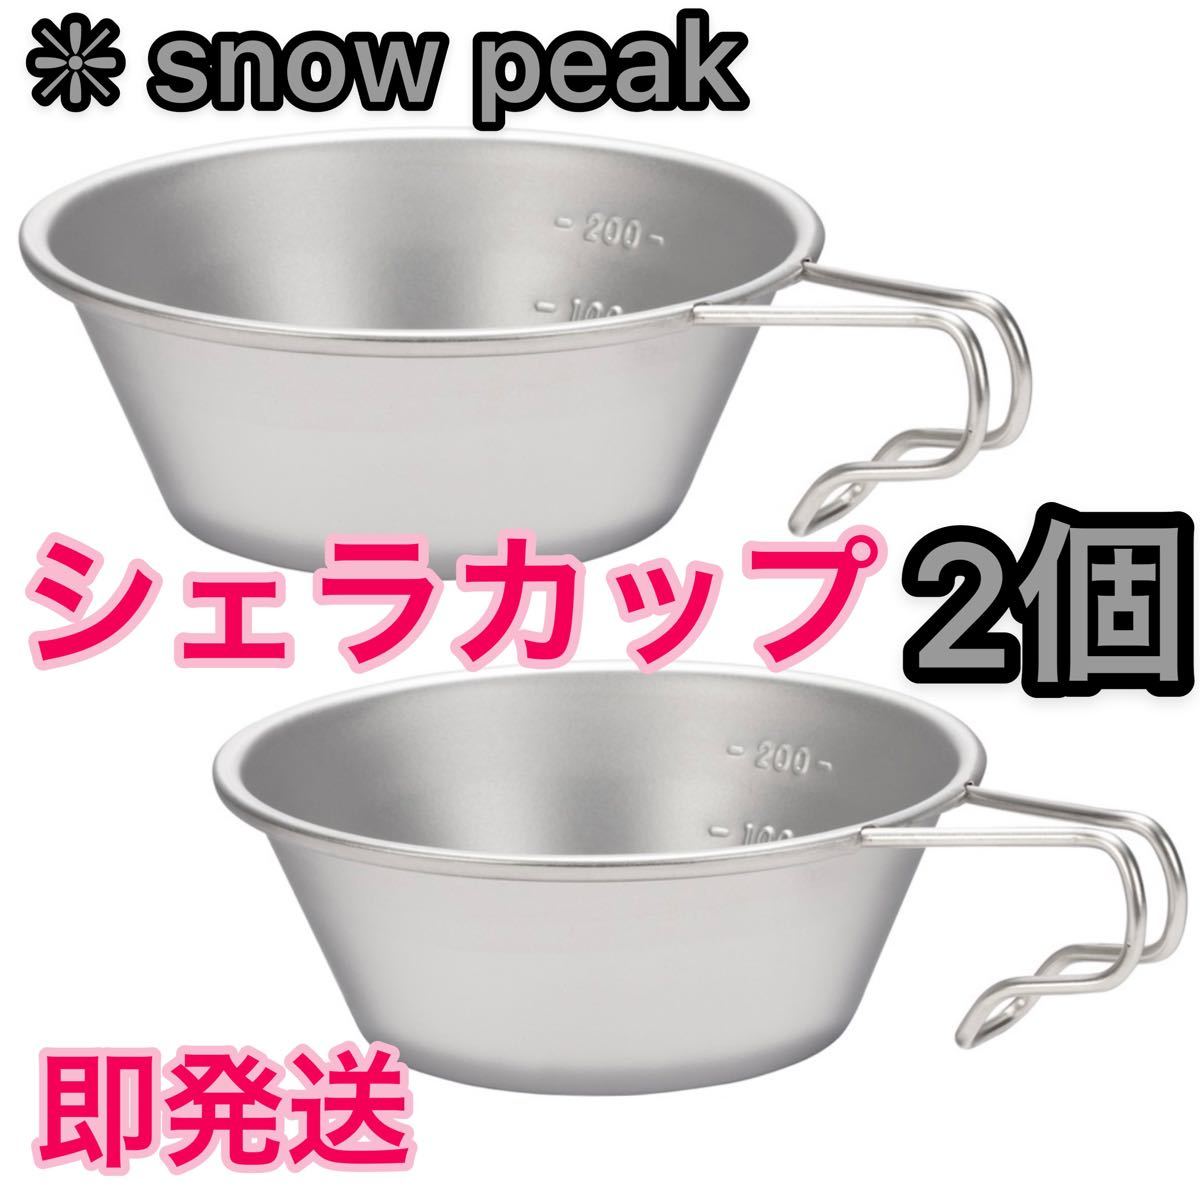 【新品未使用】snow peakスノーピーク シェラカップ 2個セット ★E-103★ 310ml 